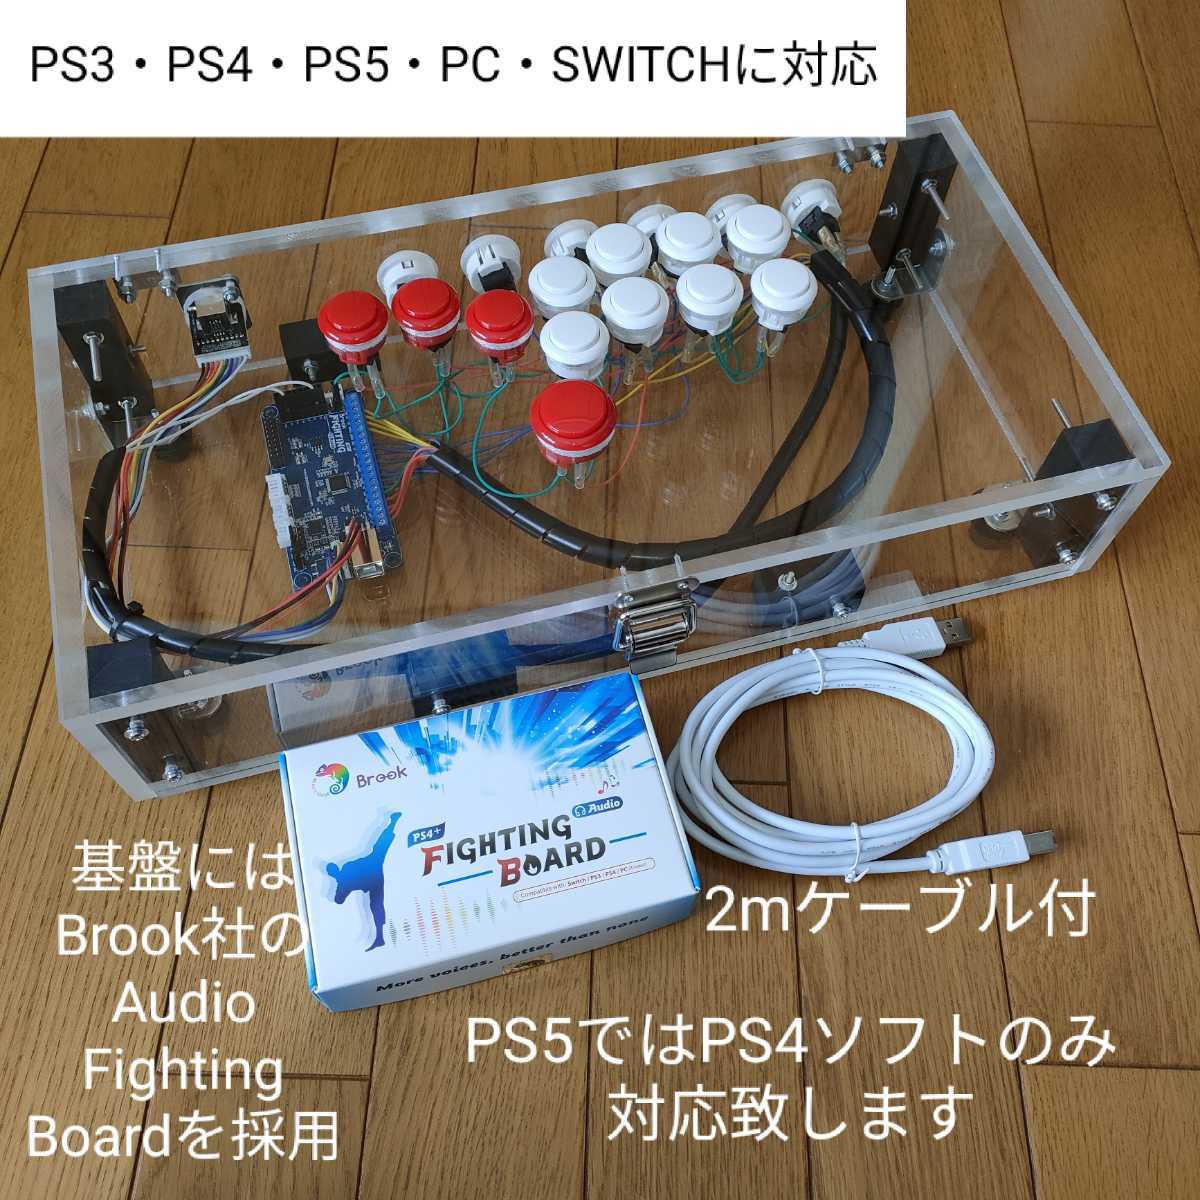 hitbox アケコン ヒットボックス レバーレス コントローラー PS4 SWITCH アーケード PS5 ストリートファイターV PC ガフロコン  スイッチ